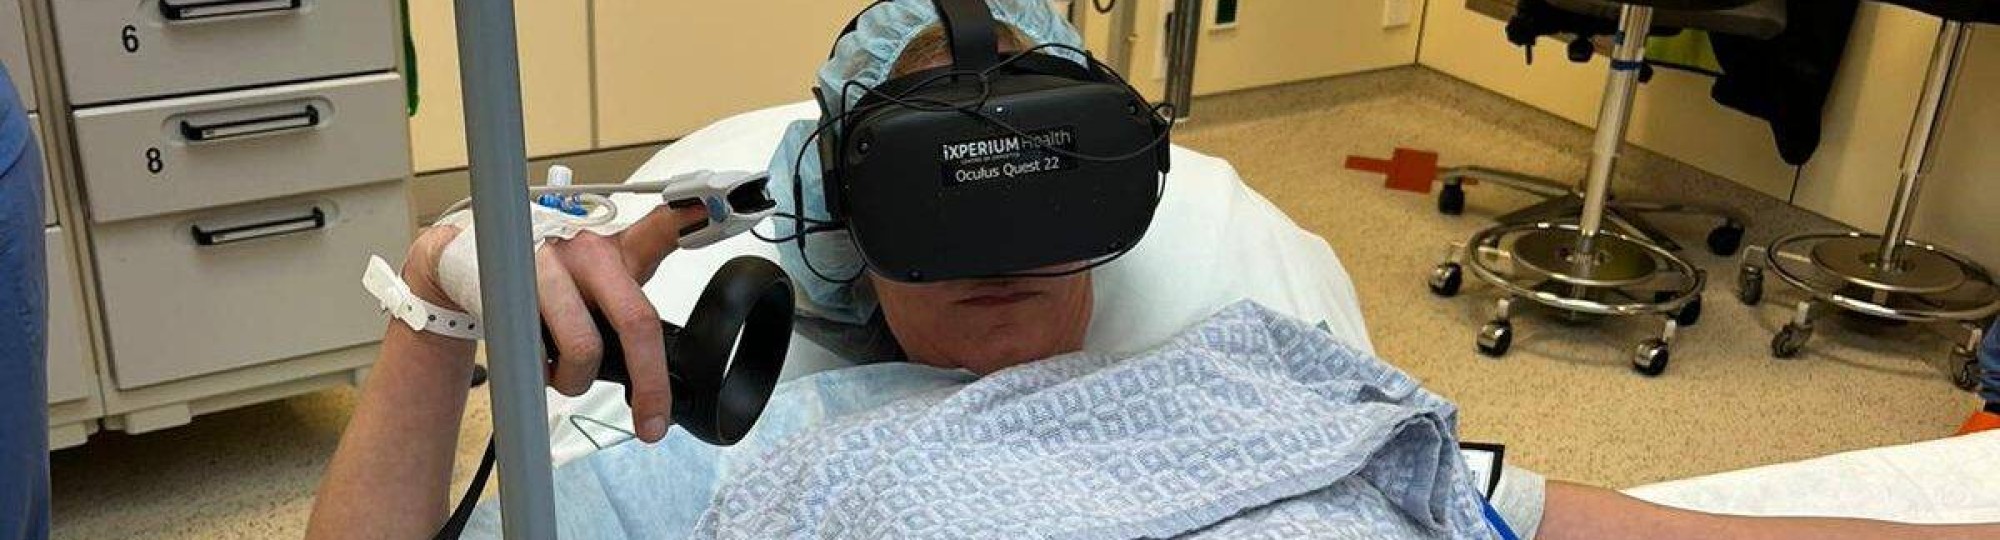 Een patient in een ziekenhuis op weg naar de operatiekamer met een VR-bril op